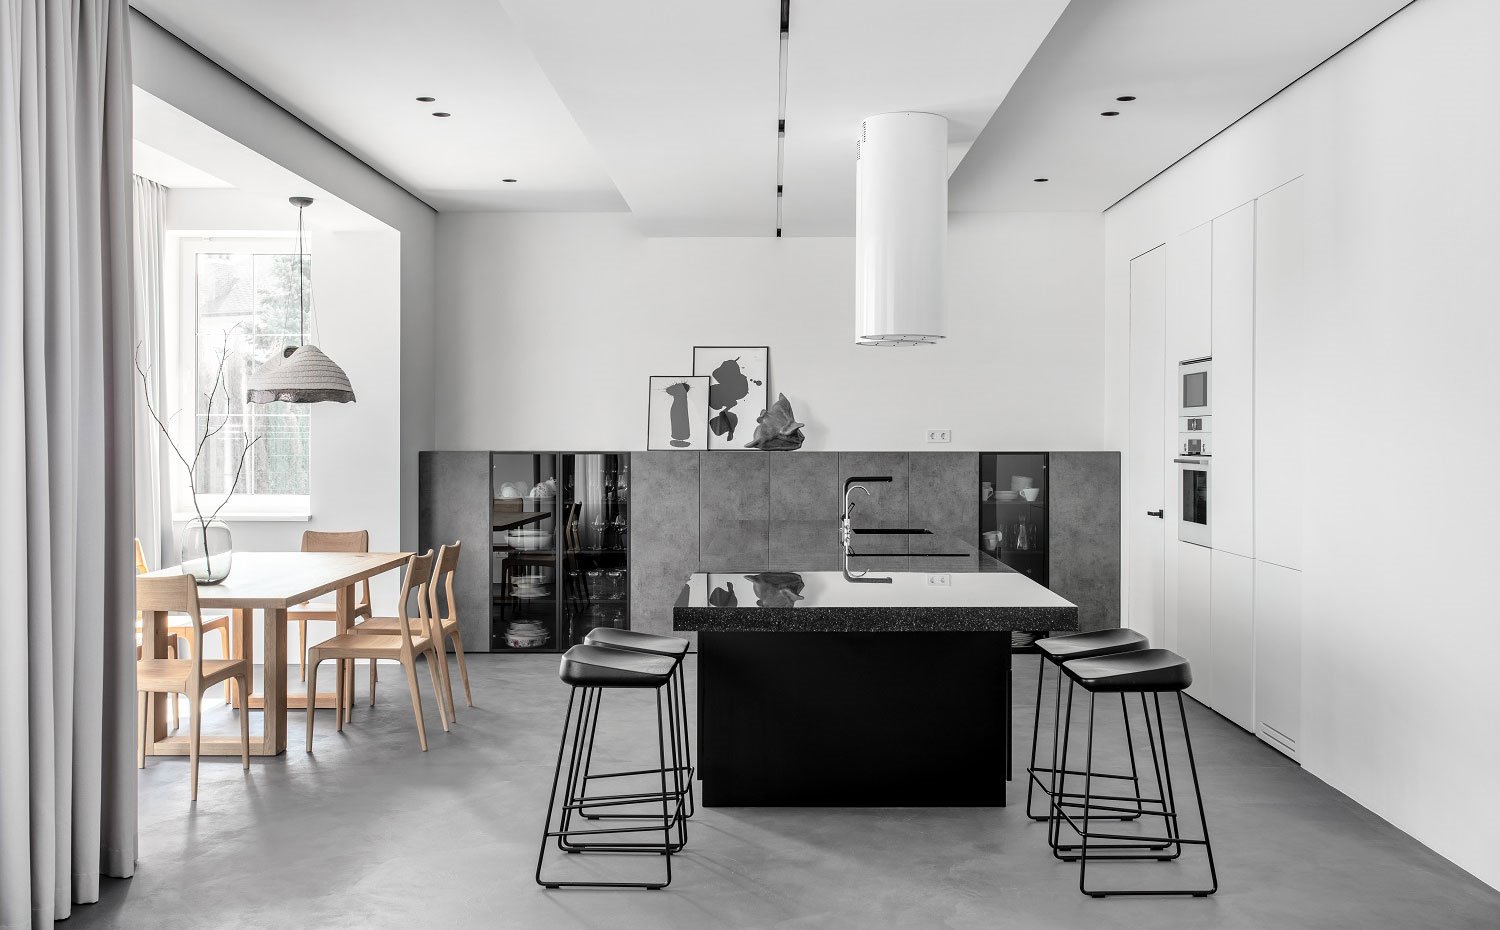 Cocina y comedor en un solo ambiente, con mobiliario en blanco, gris y negro y campanas estractoras cilíndricas en blanco